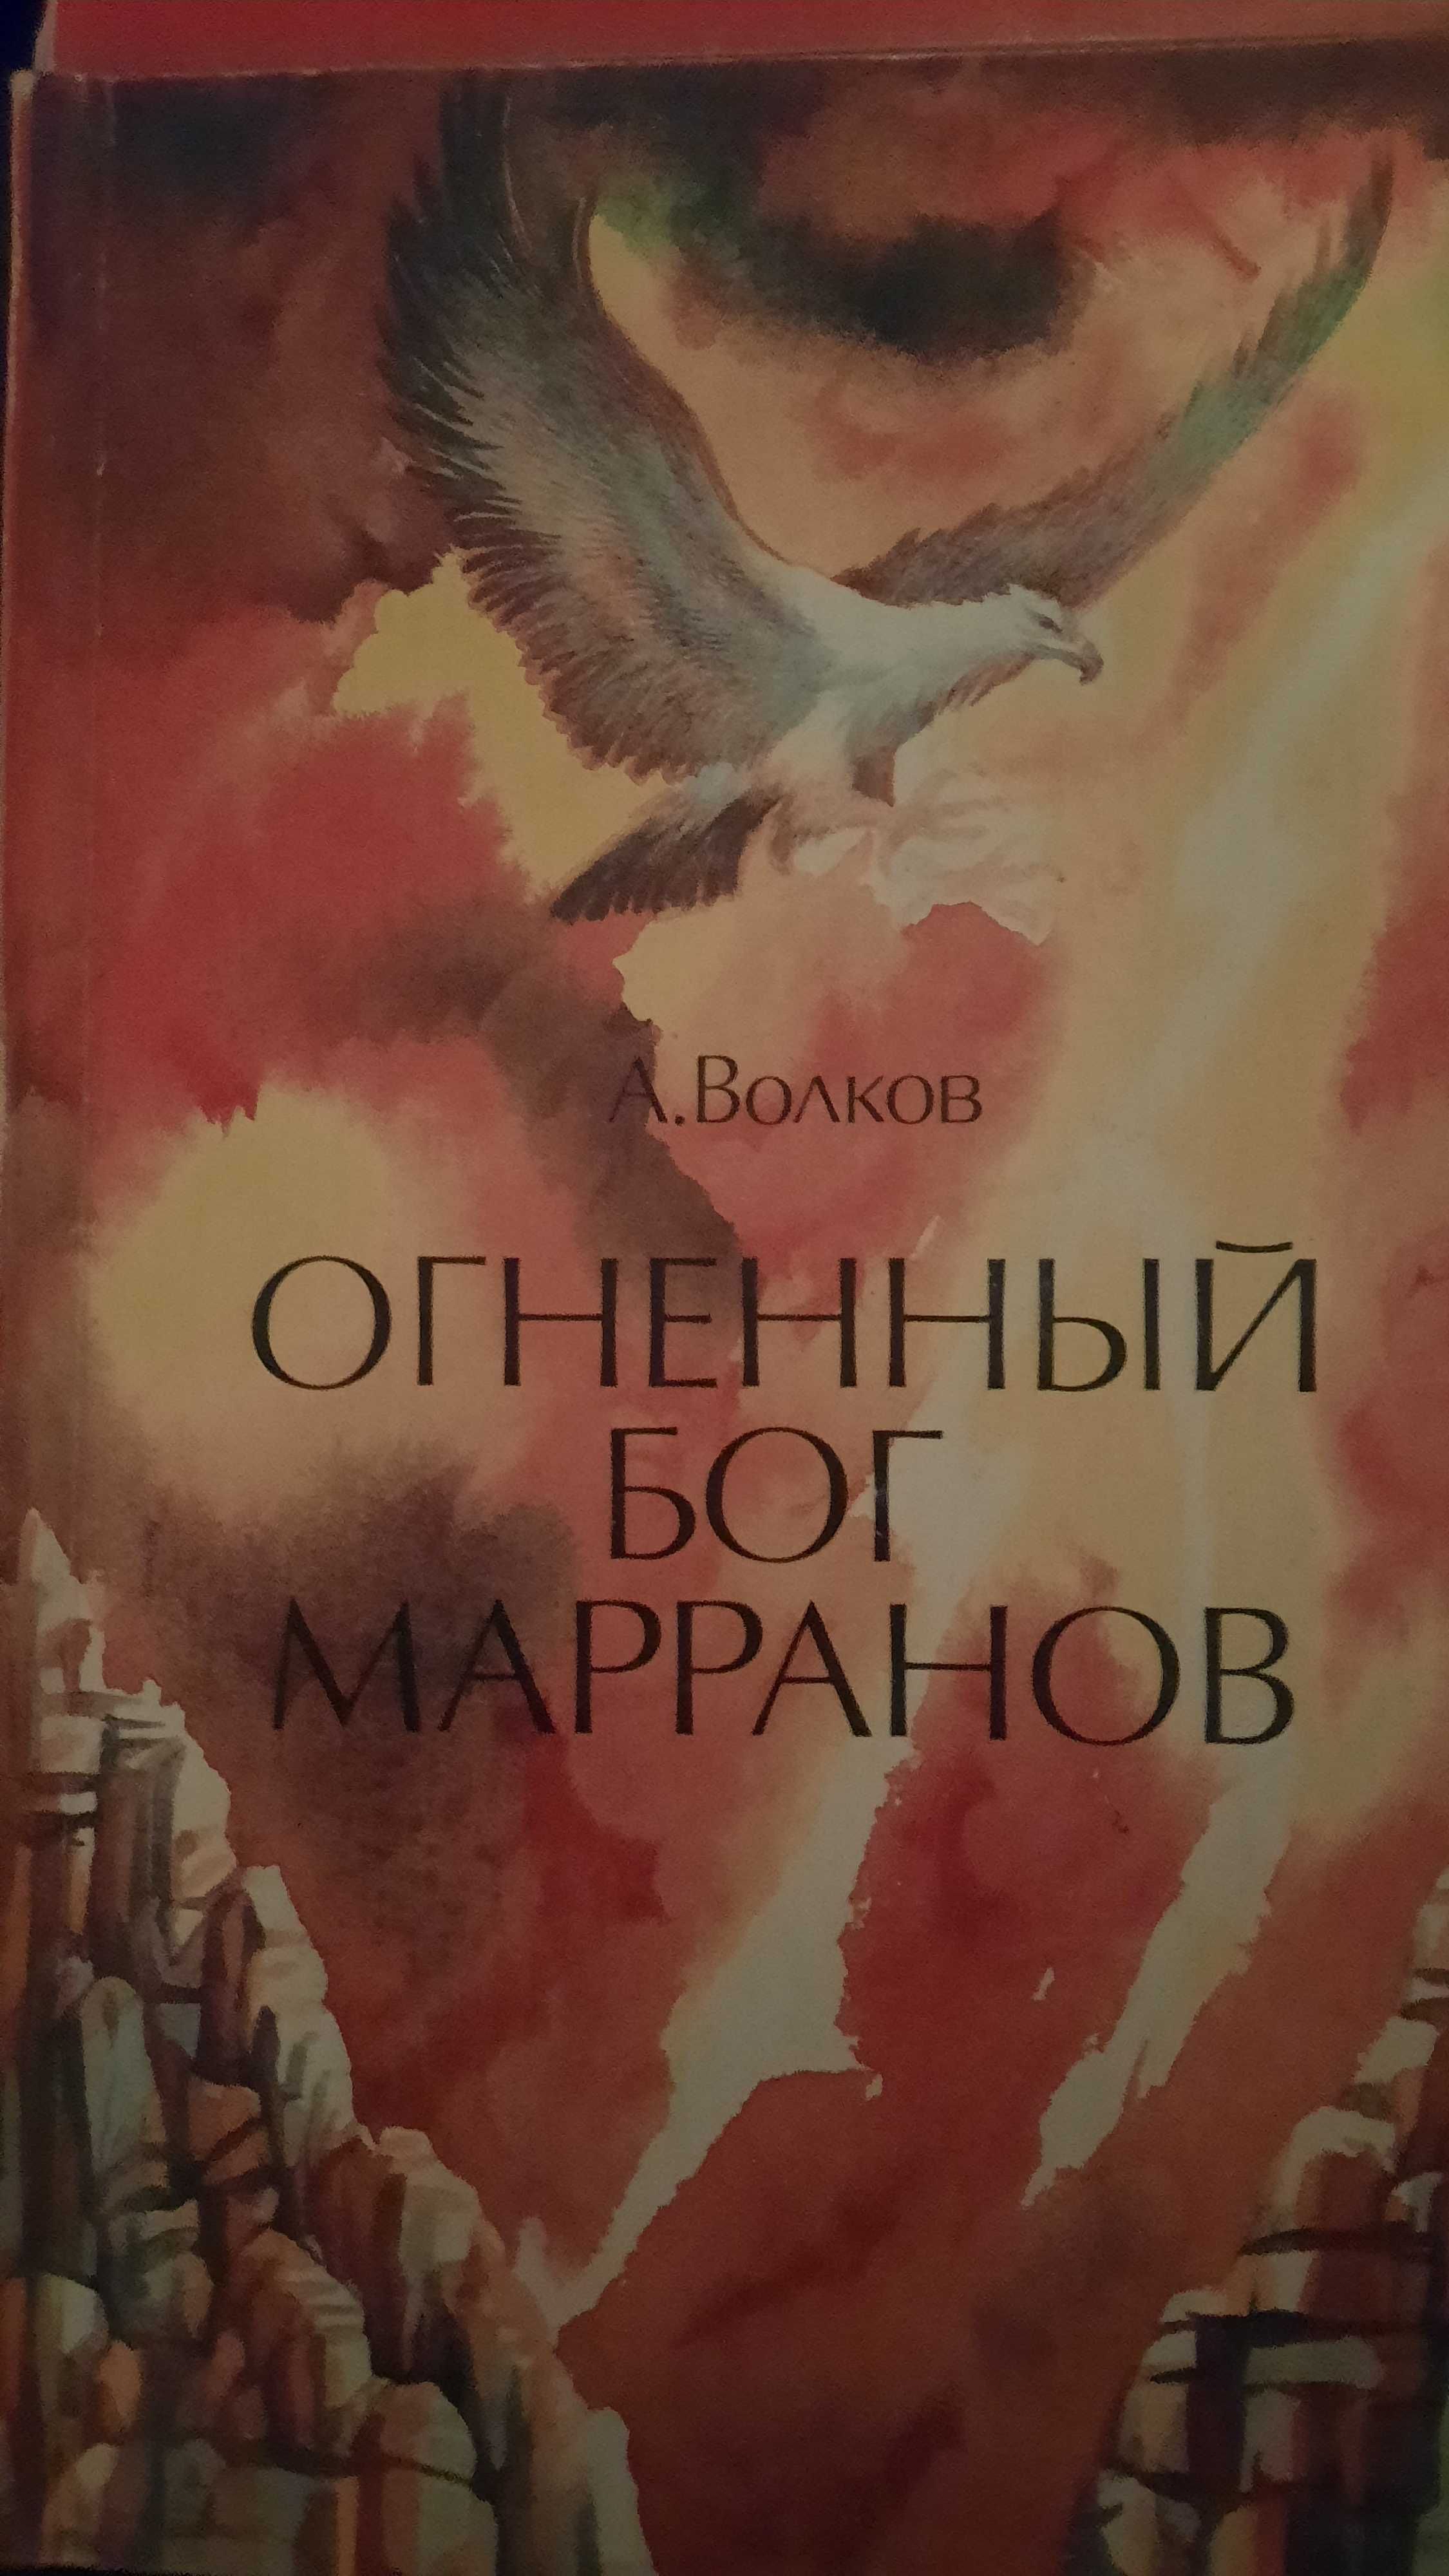 Александр Волков: Волшебник Изумрудного города (полный сборник-6 книг)